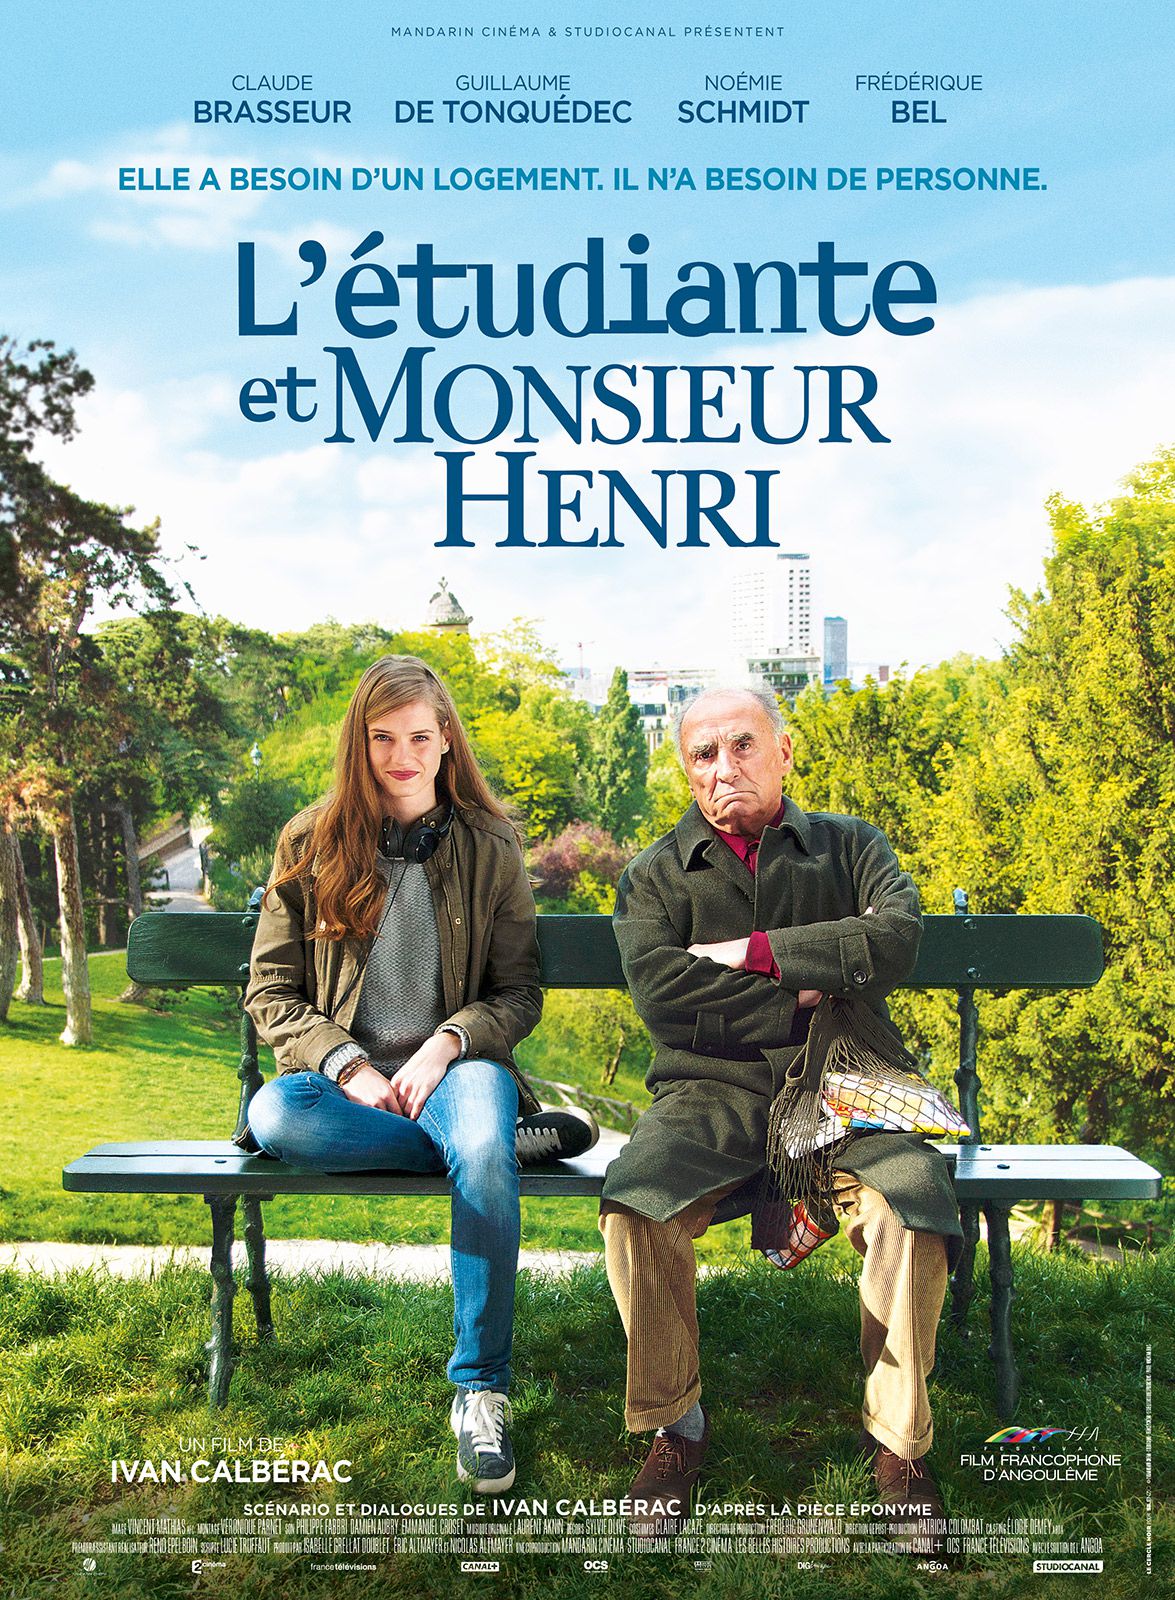 L'Etudiante et Monsieur Henri - Film (2015)